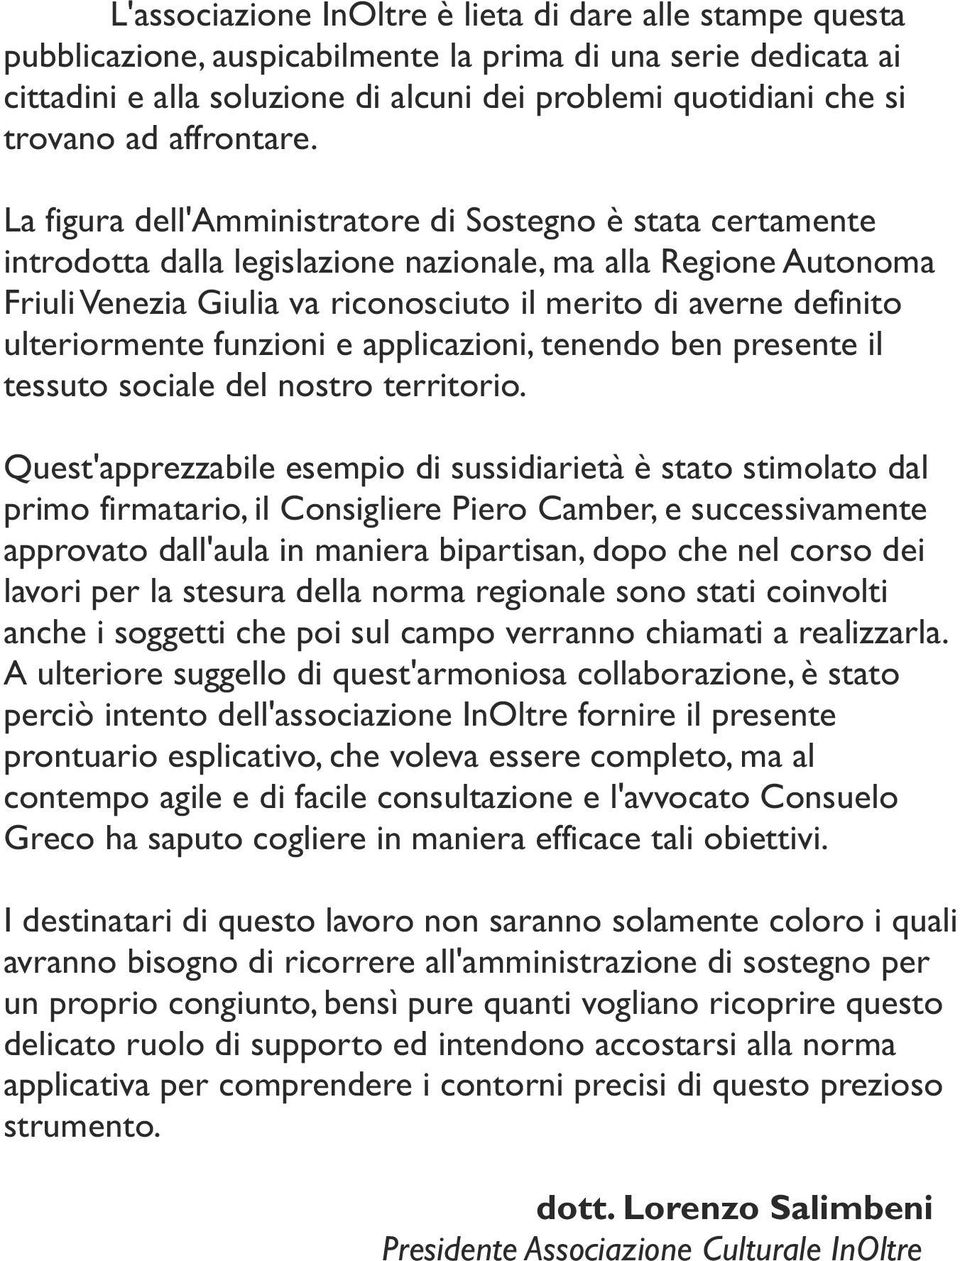 La figura dell'amministratore di Sostegno è stata certamente introdotta dalla legislazione nazionale, ma alla Regione Autonoma Friuli Venezia Giulia va riconosciuto il merito di averne definito